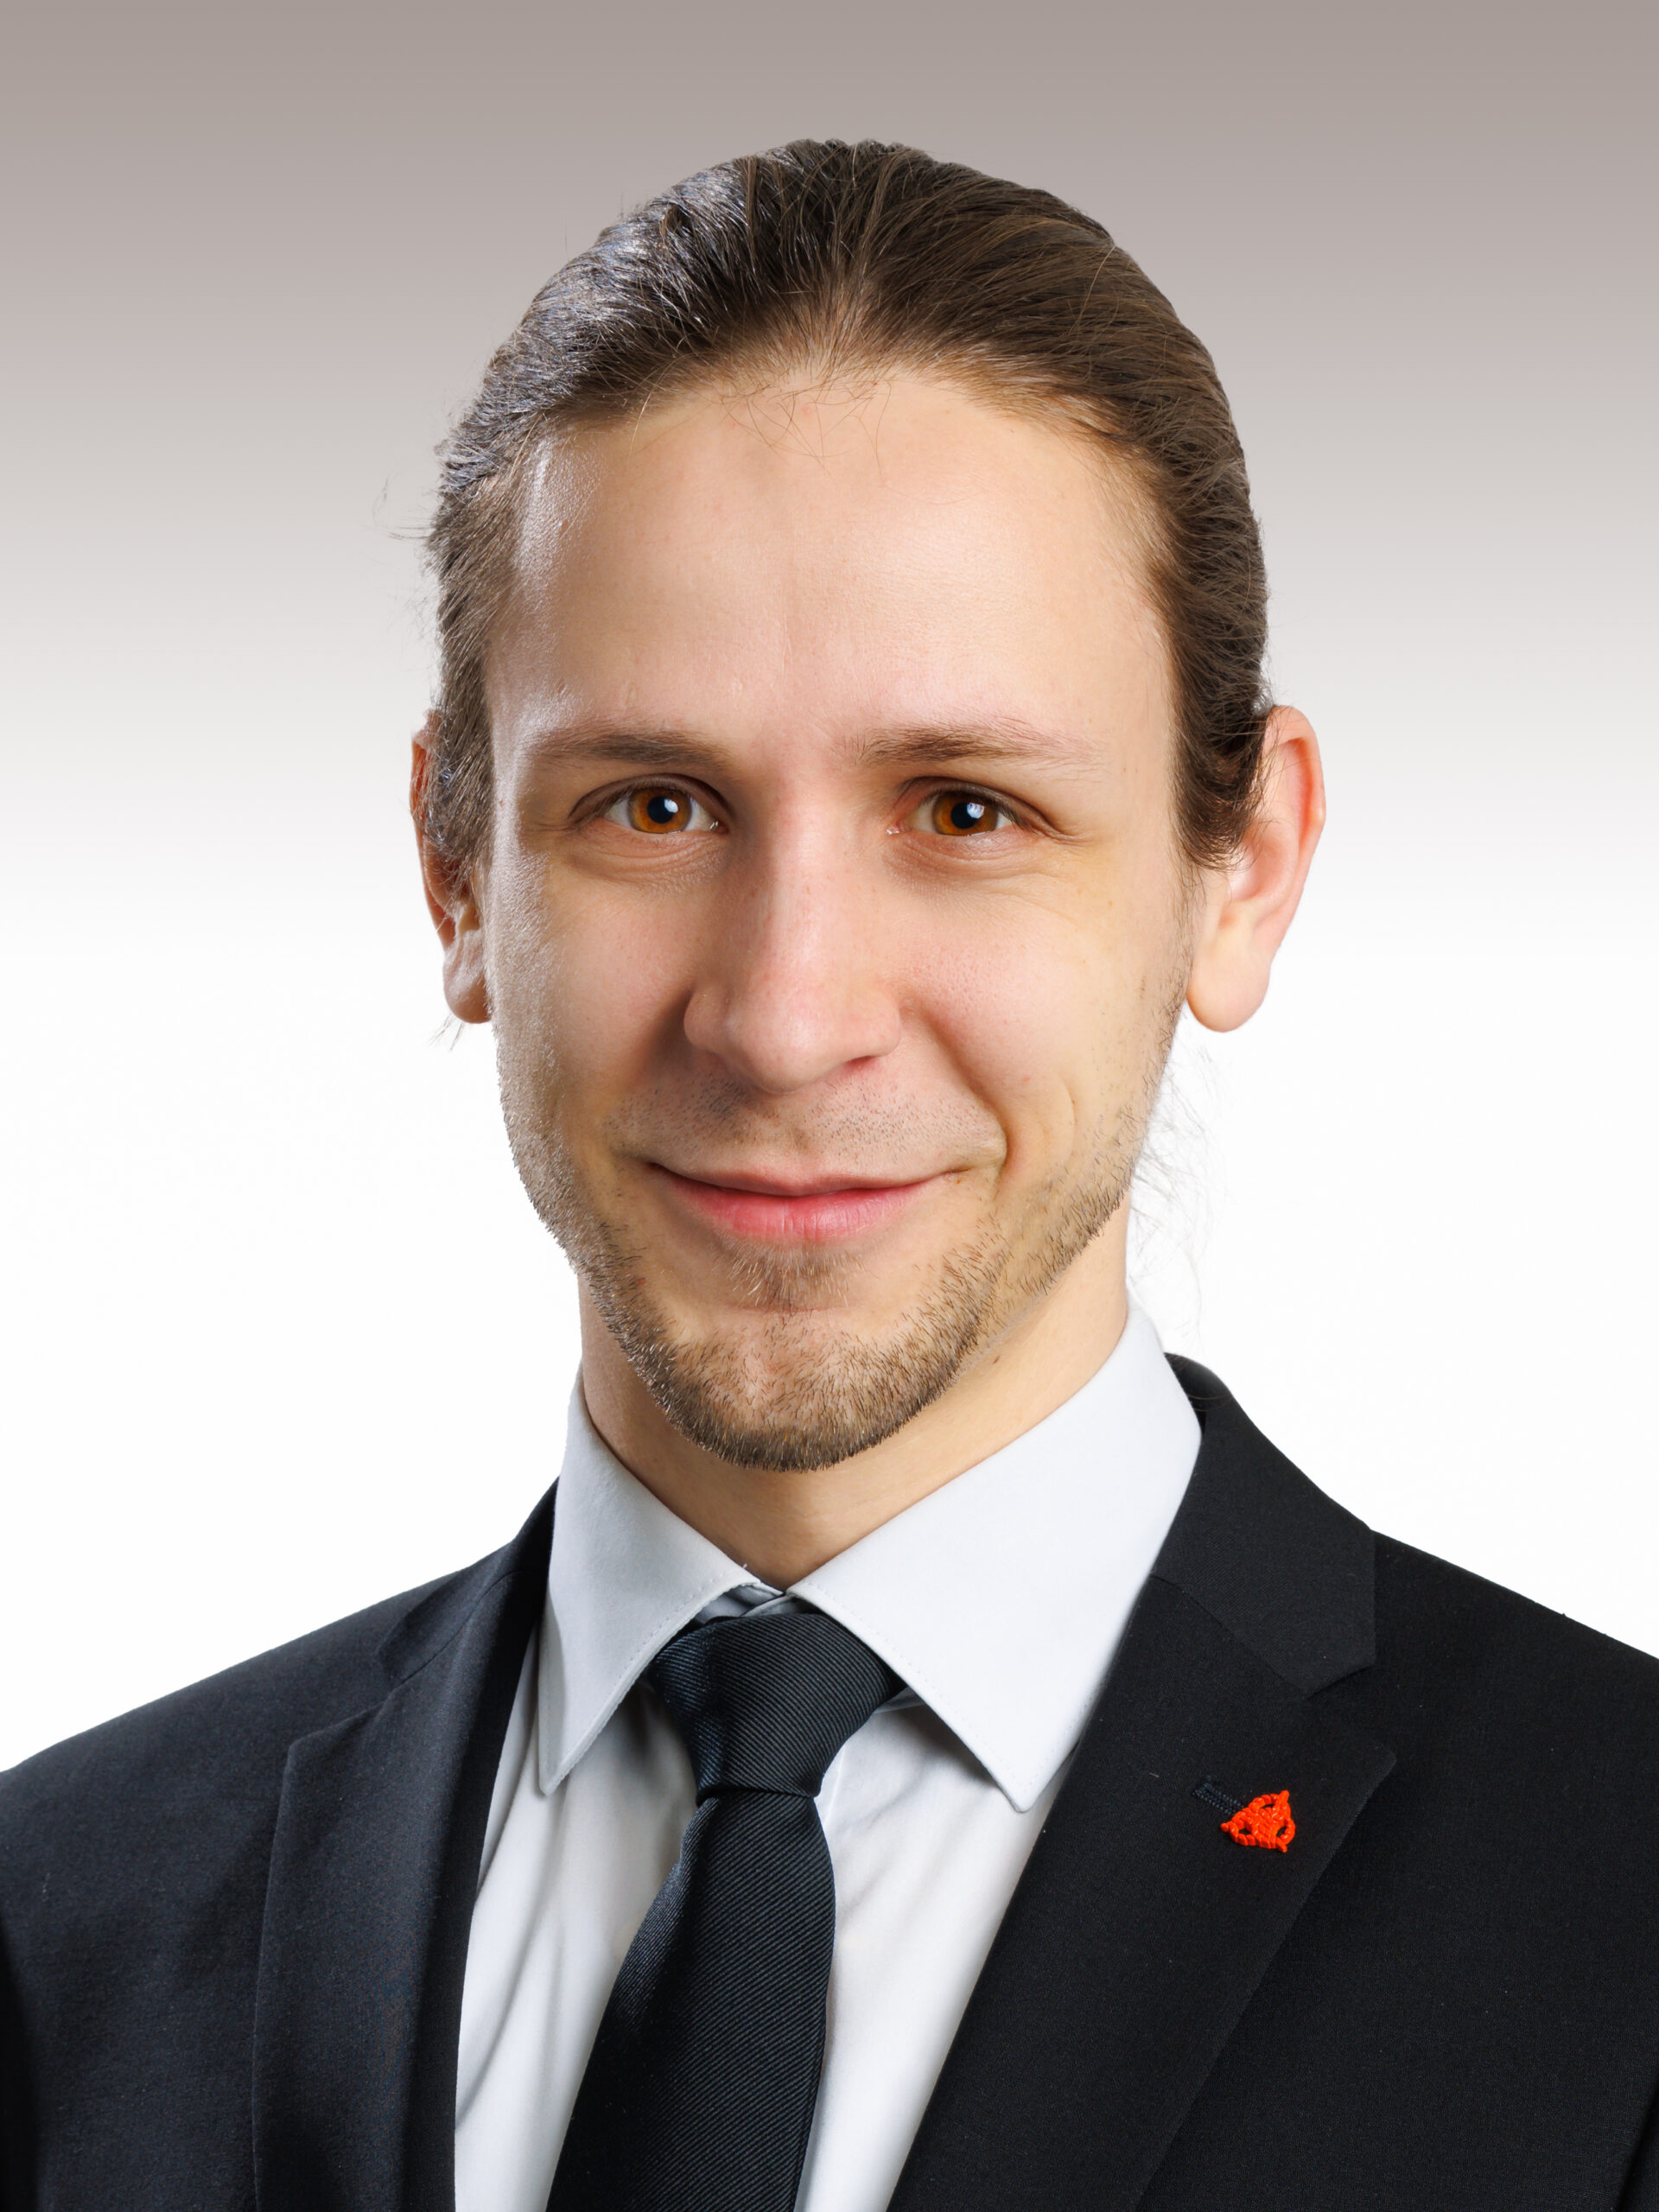 Dario Gasser, M.A. HSG in Law Rechtsanwalt und Notar, Partner bei bürki bolt rechtsanwälte. Die Anwaltskanzlei im St. Galler Rheintal